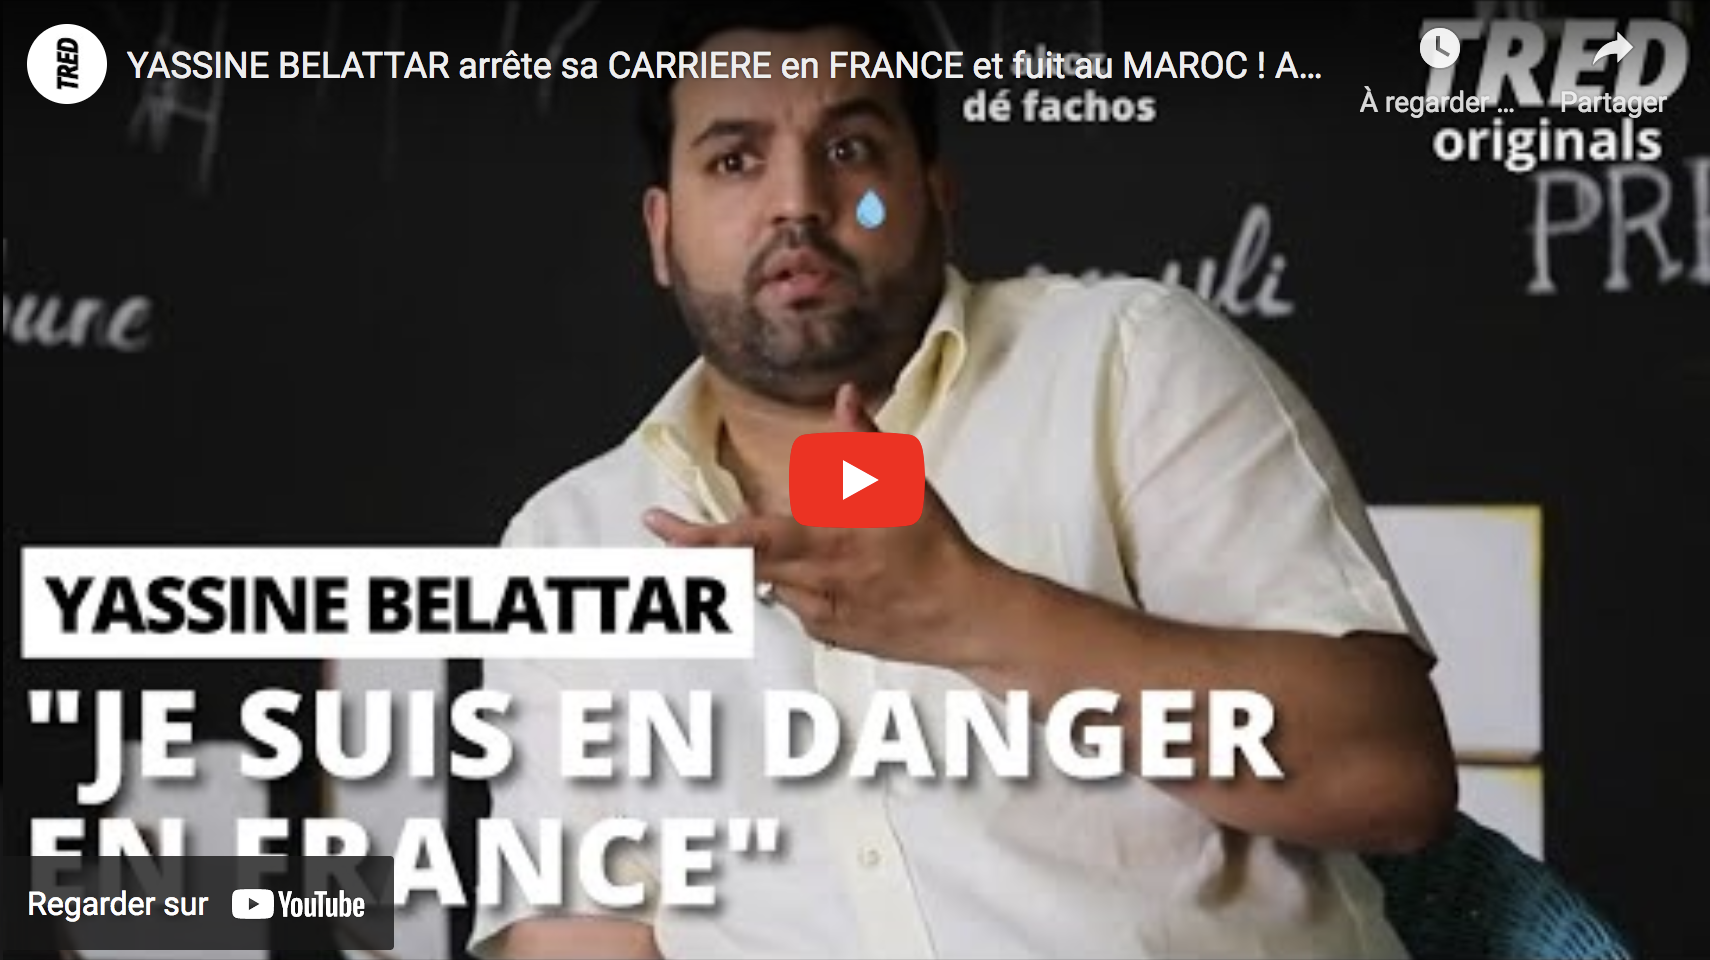 Yassine Belattar arrête sa carrière en France et fuit au Maroc ! (VIDÉO)